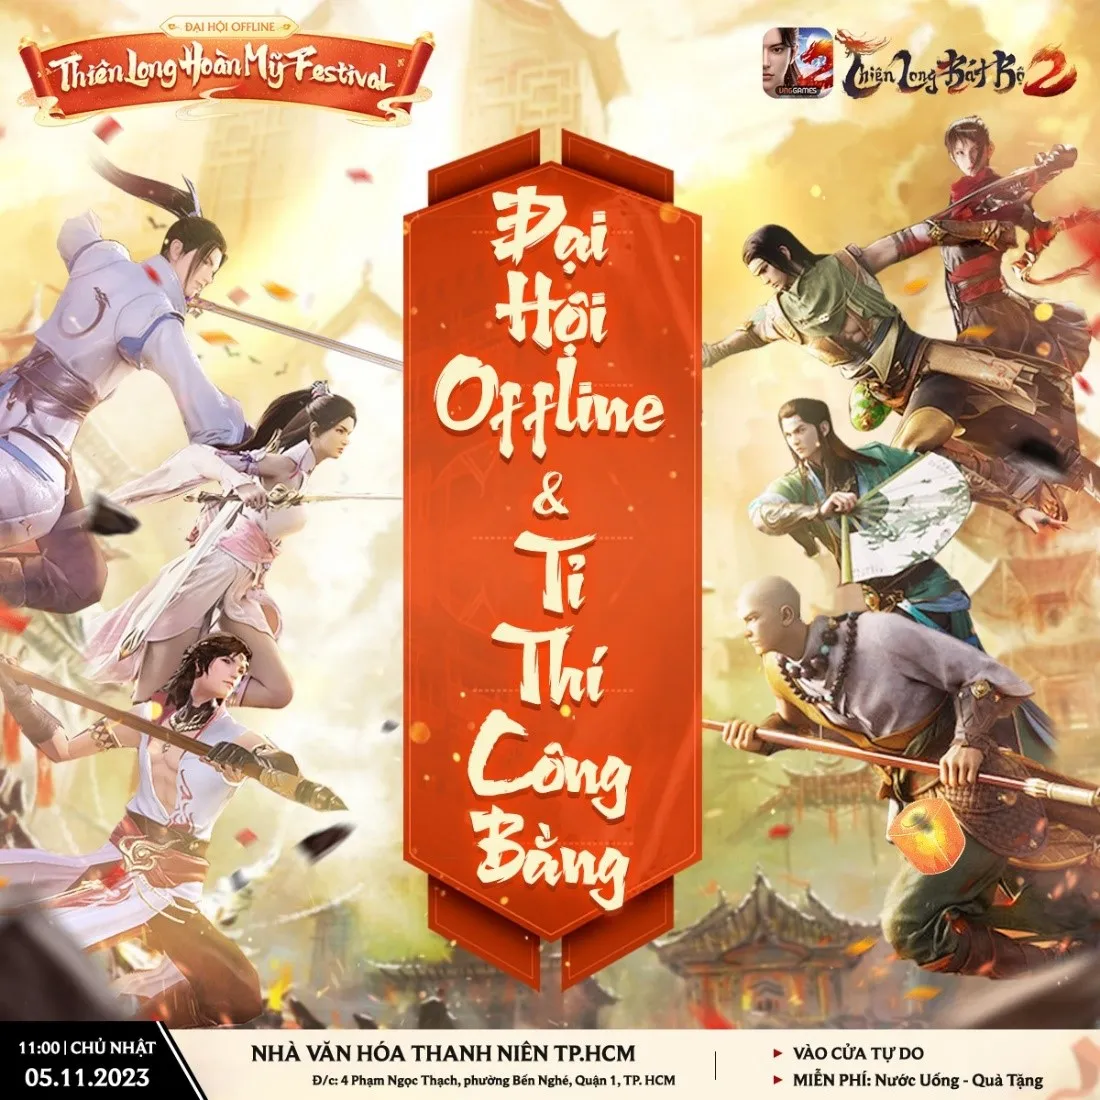 Hàng trăm game thủ sẵn sàng tham dự Đại hội Offline Thiên Long Hoàn Mỹ Festival tại TP.HCM và Hà Nội